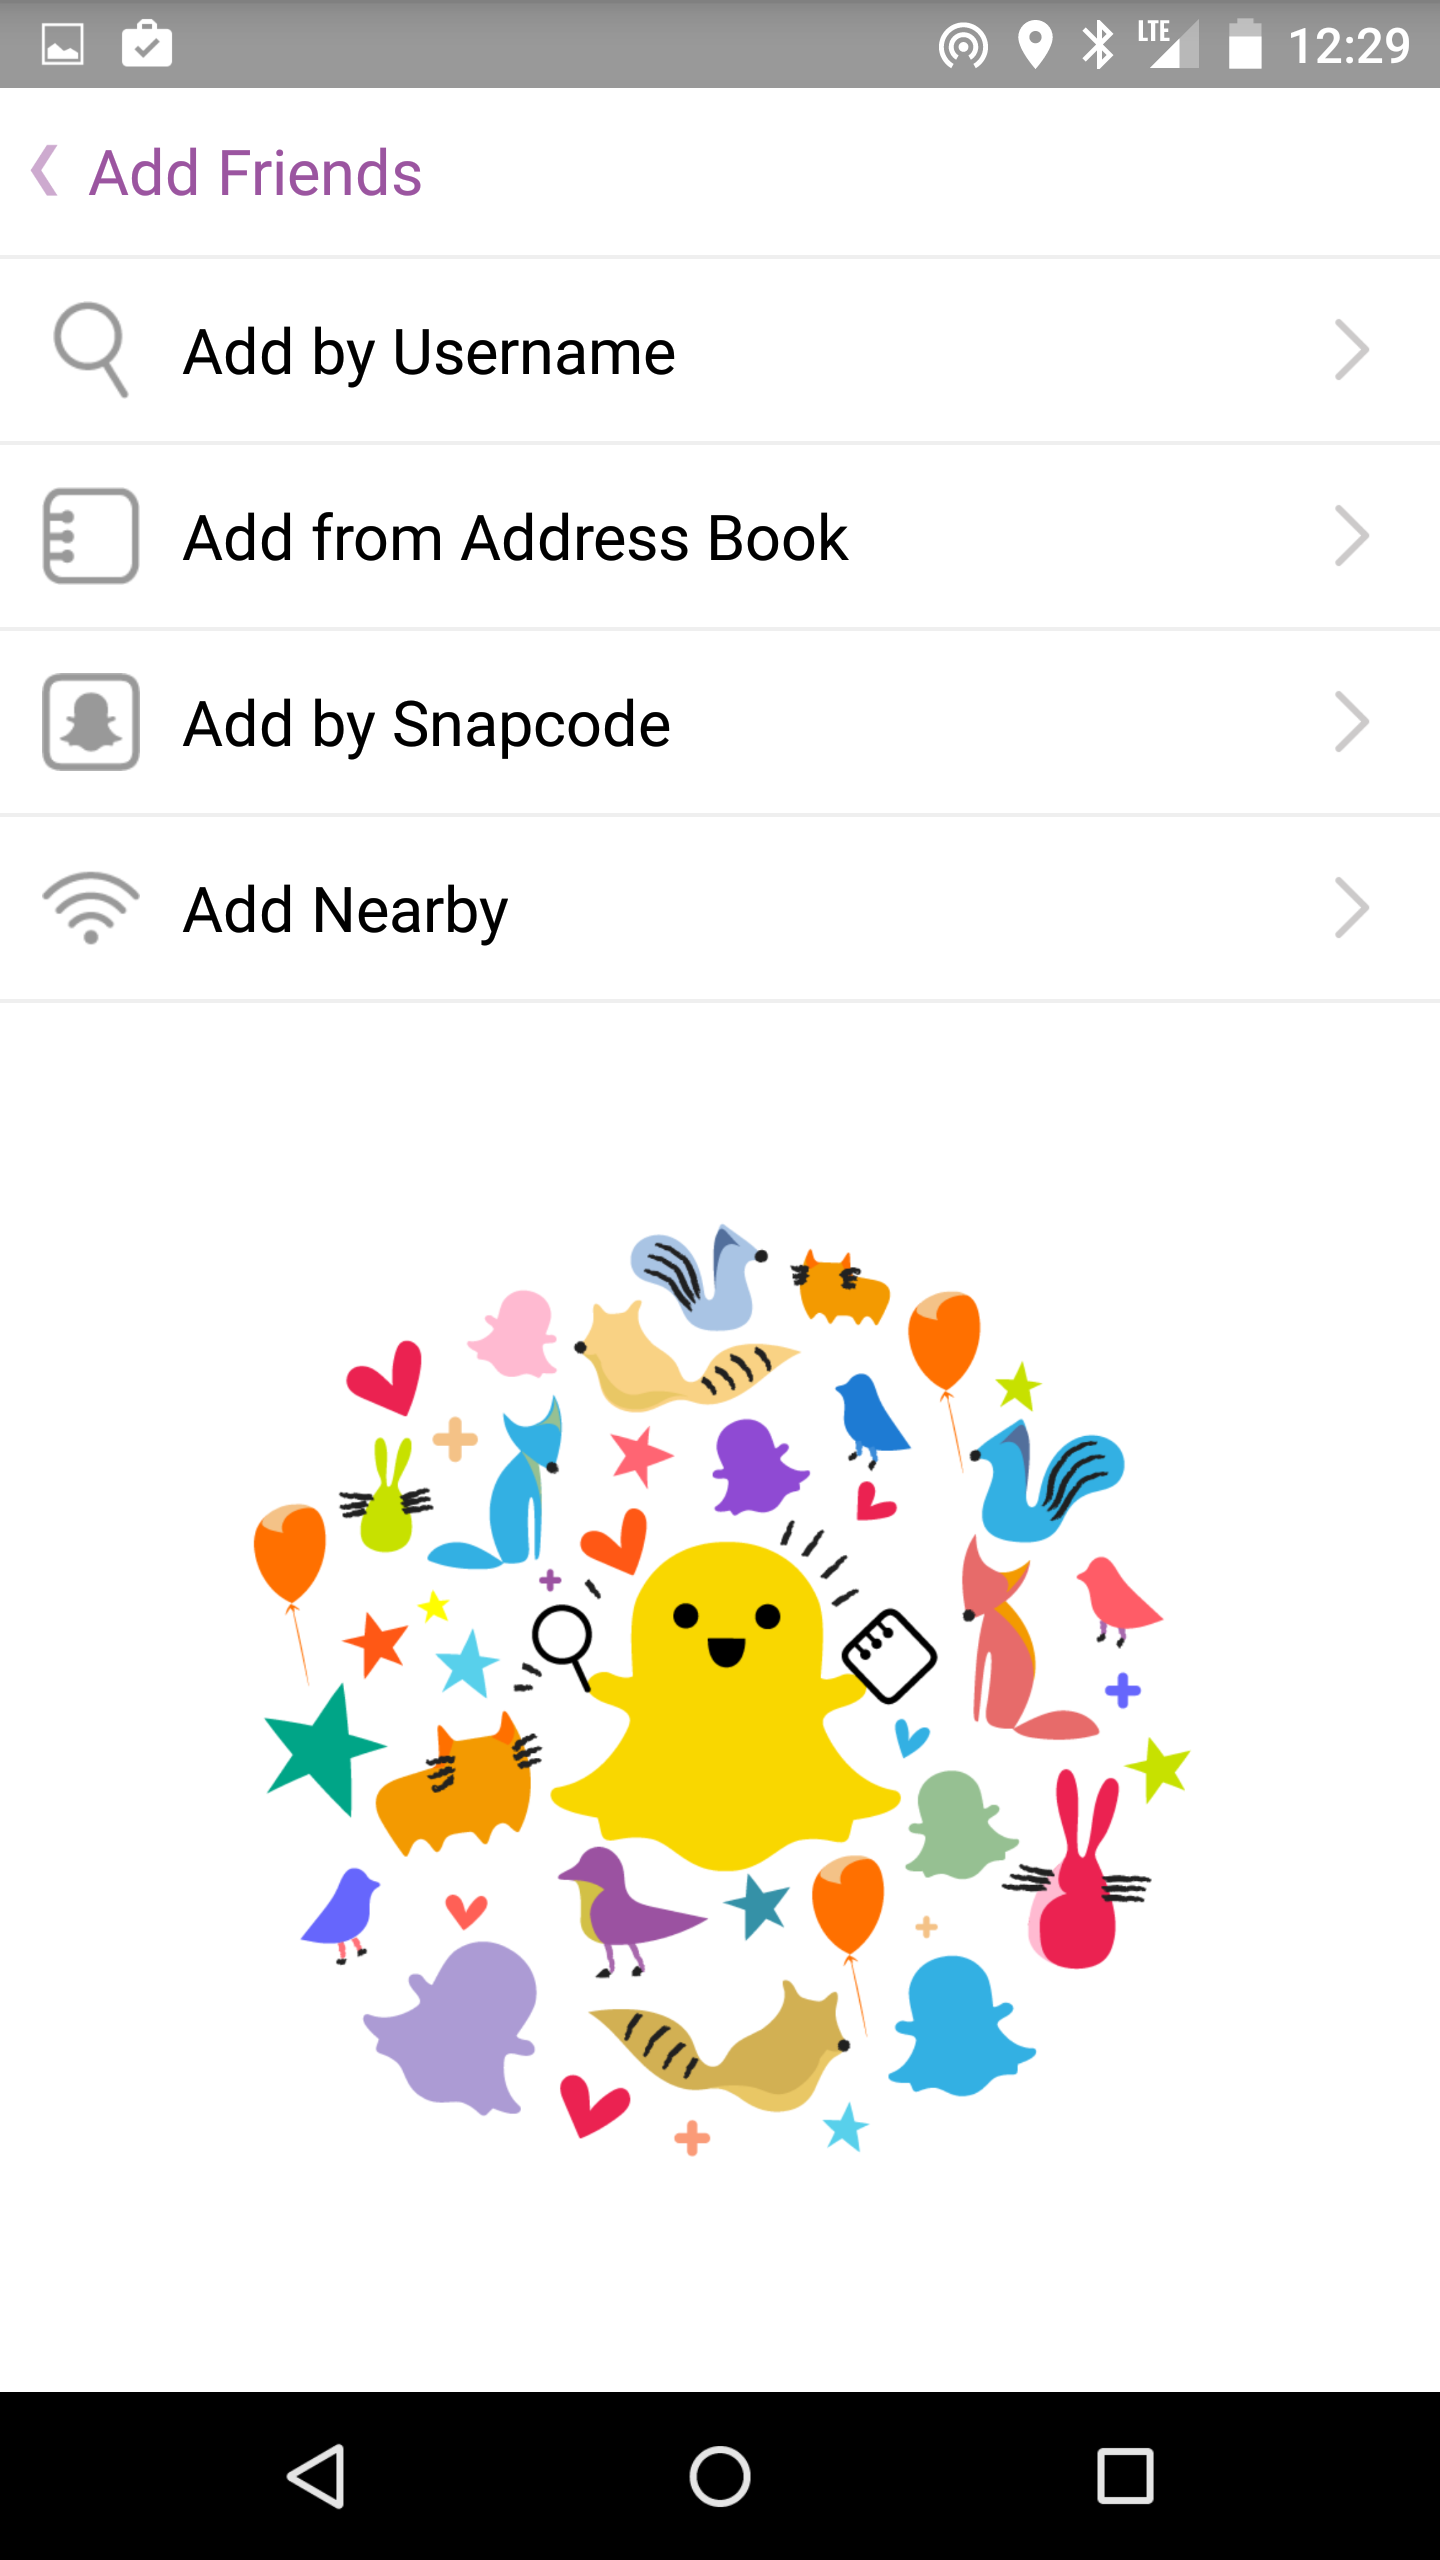 Add near. Снапчат. Снапчат функционал. Snapchat новый. Snapchat программы мгновенного обмена сообщениями.